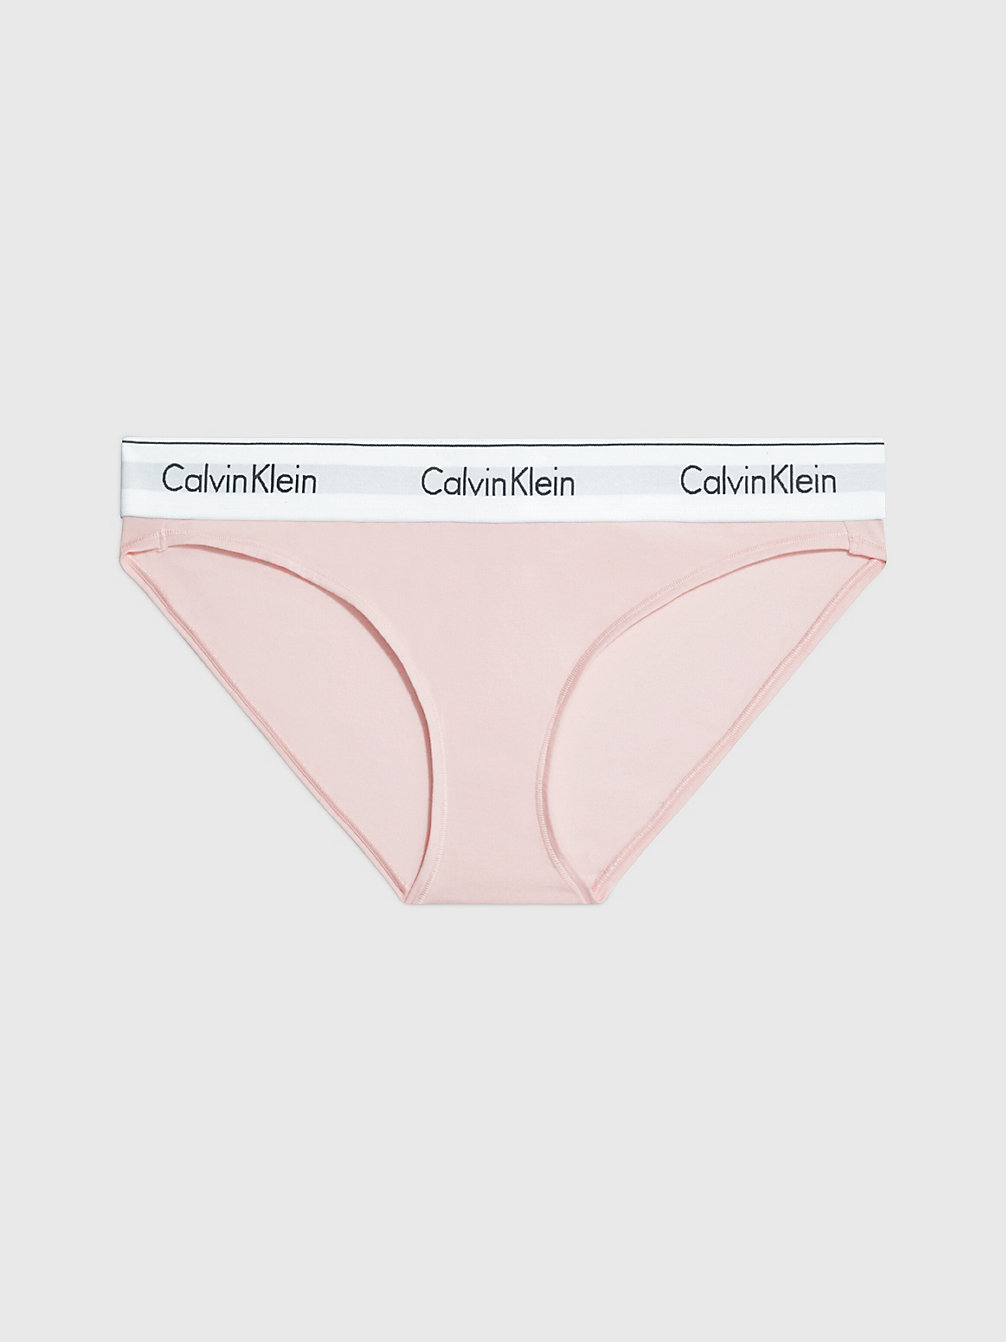 NYMPHS THIGH > Bikini Slip - Modern Cotton > undefined dames - Calvin Klein